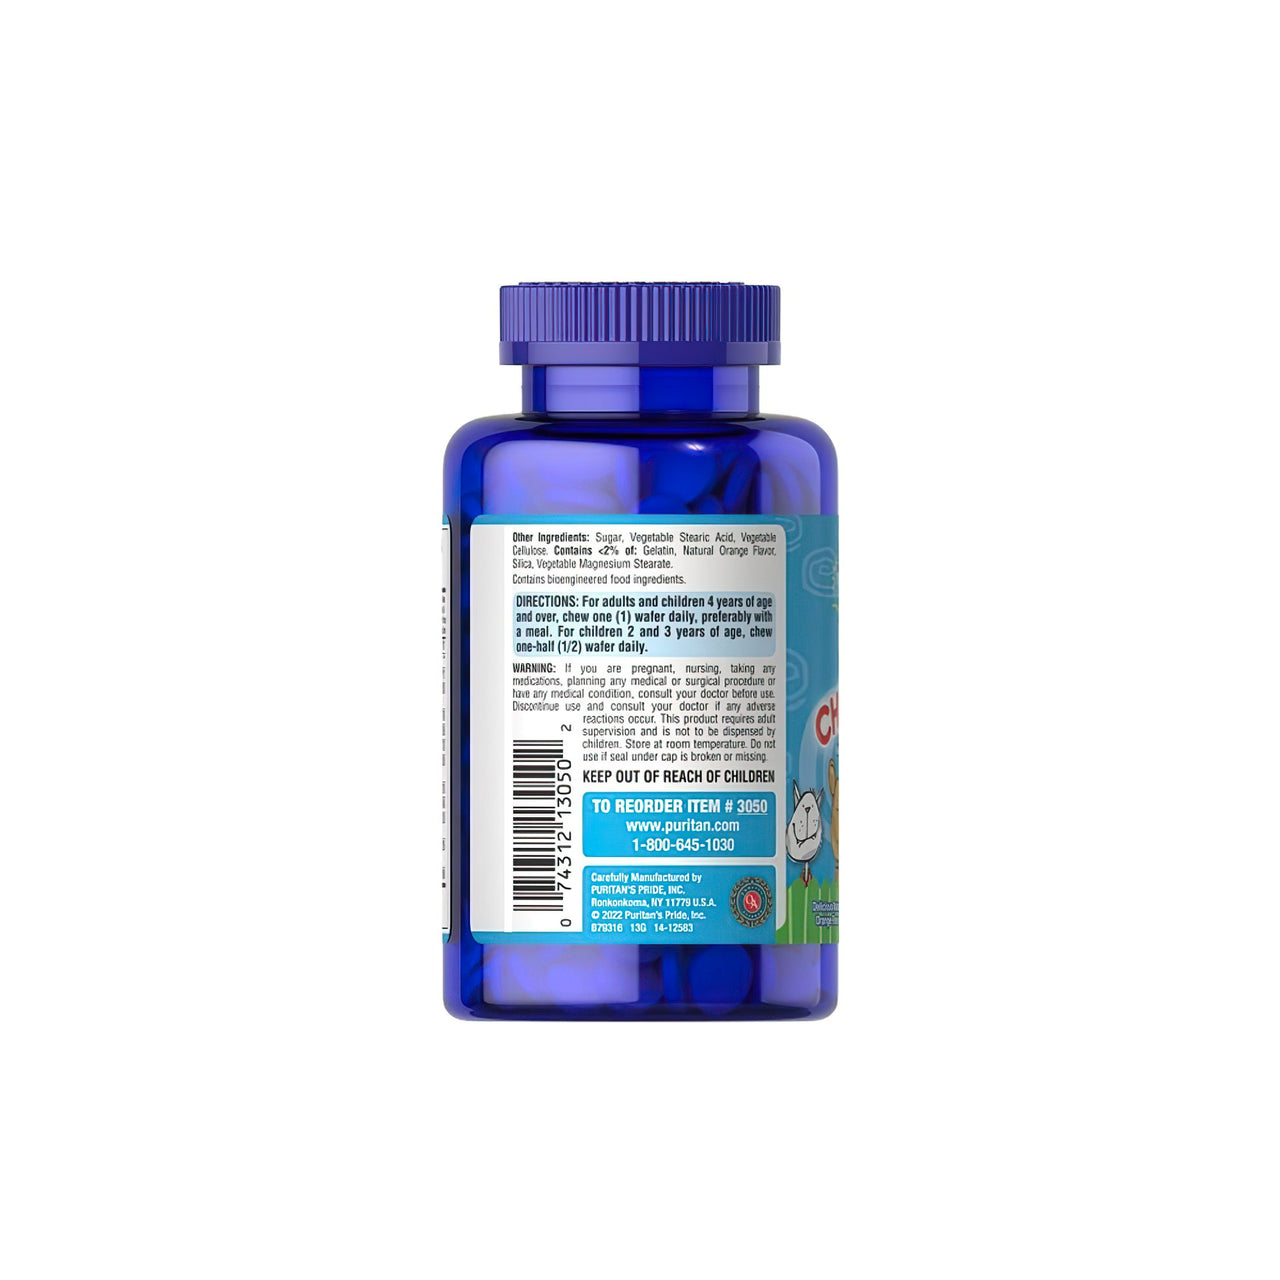 Reverso de una botella azul de PRE- Vites Chlidren's multivitamin 100 chewable wafers, que contiene vitaminas esenciales de Puritan's Pride.